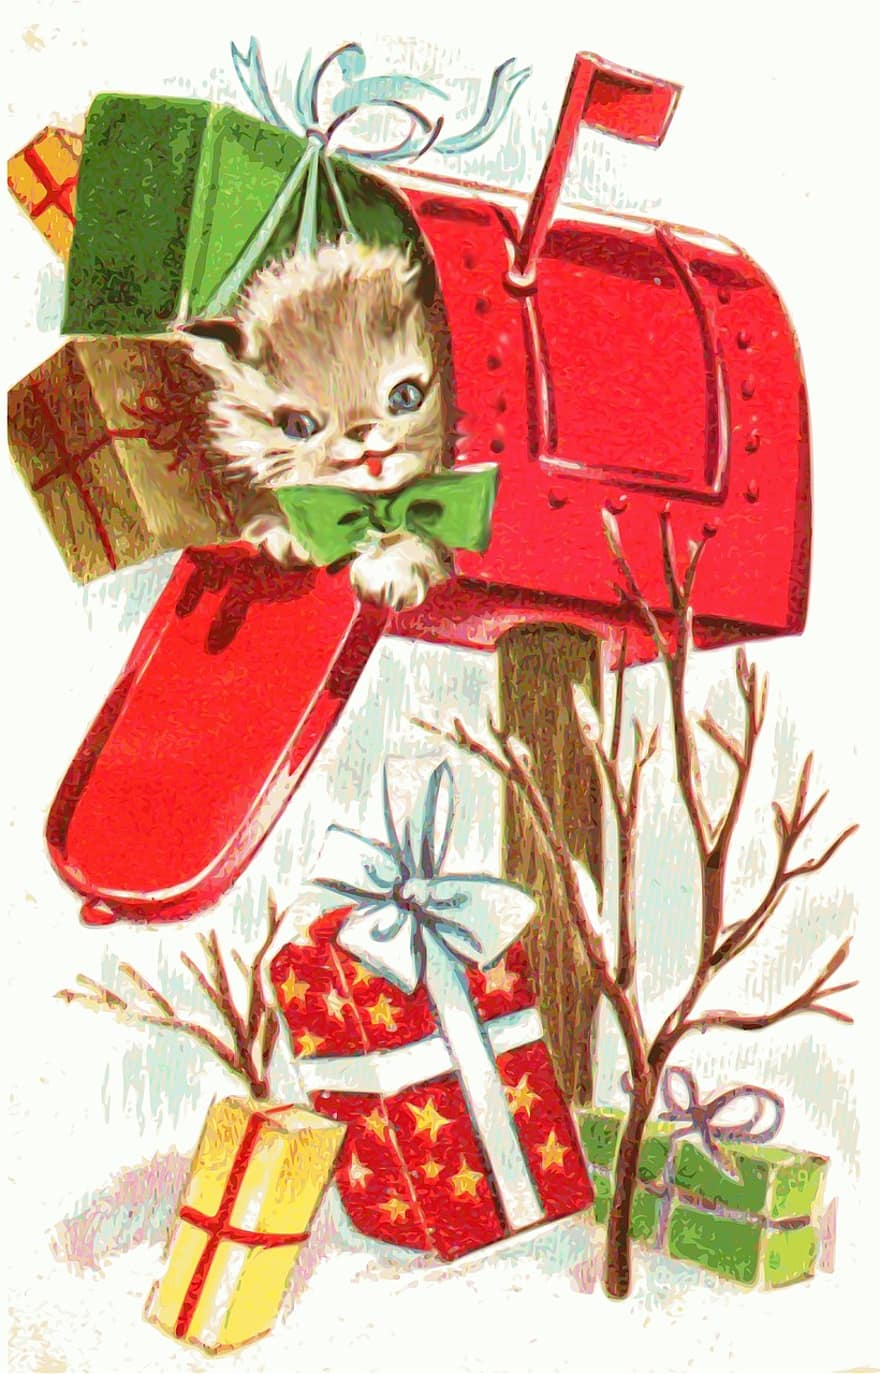 Nadal, gatet, animal, oficines de correus, regals, lletres